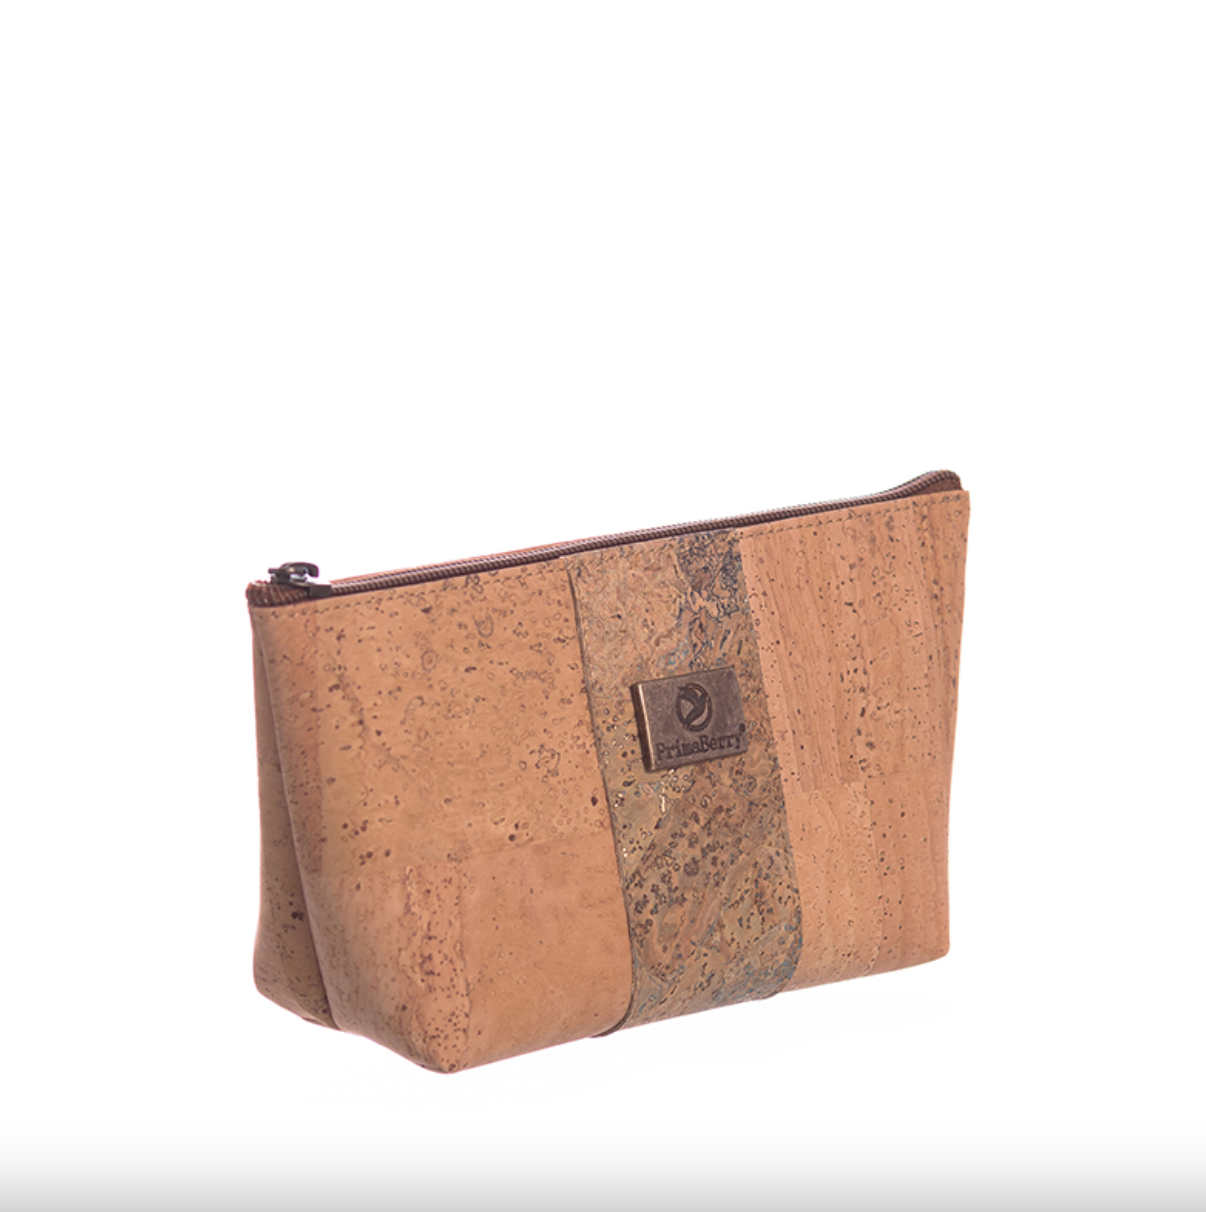 Bolsa Cosmética Small Map: bolsa de viagem elegante e funcional com um design de mapa vintage, feita de cortiça sustentável